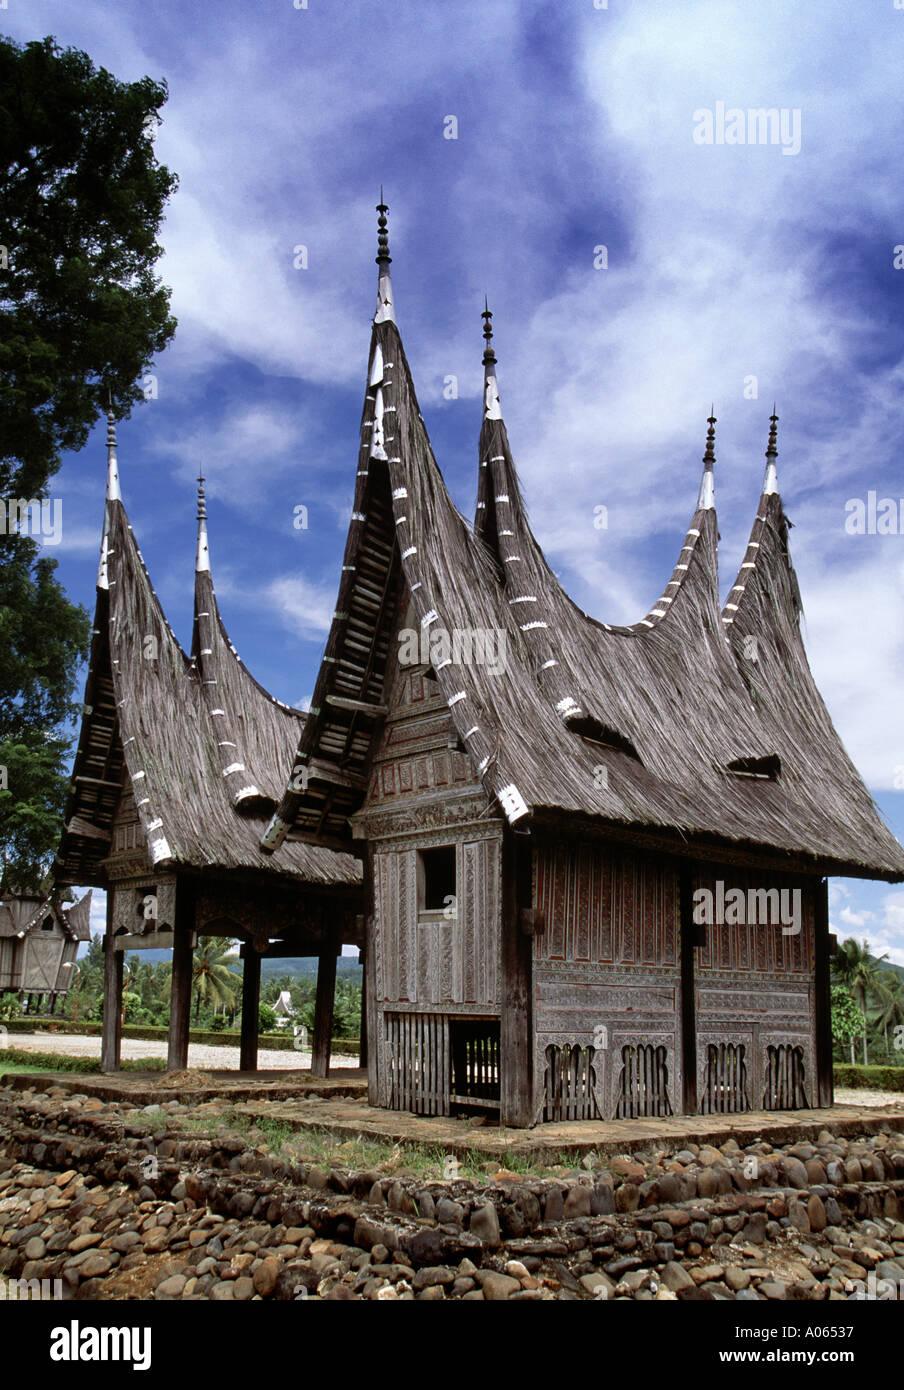 Traditionelle Strukturen auf den historischen König Palast Minangkabau Sumatra Indonesien Stockfoto